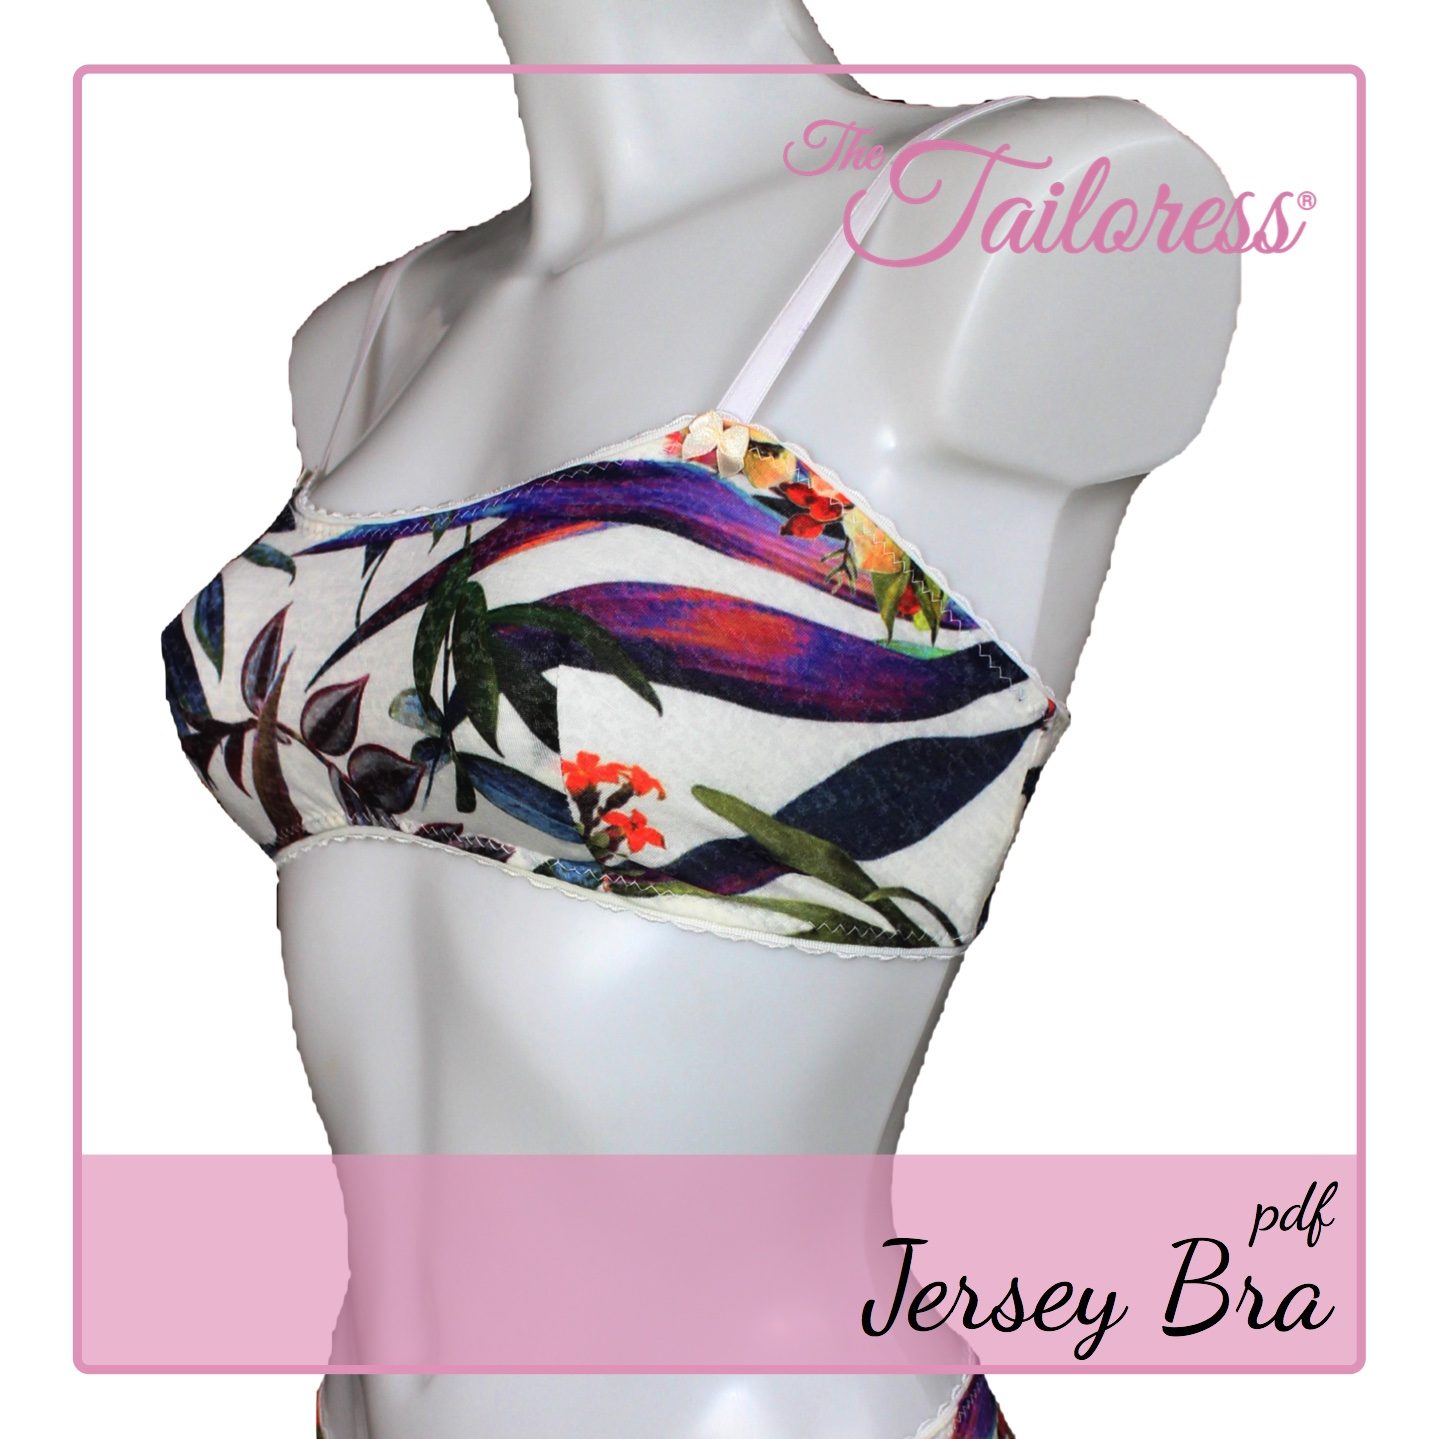 Jersey Bra PDF Sewing Pattern - The Tailoress PDF Sewing Patterns